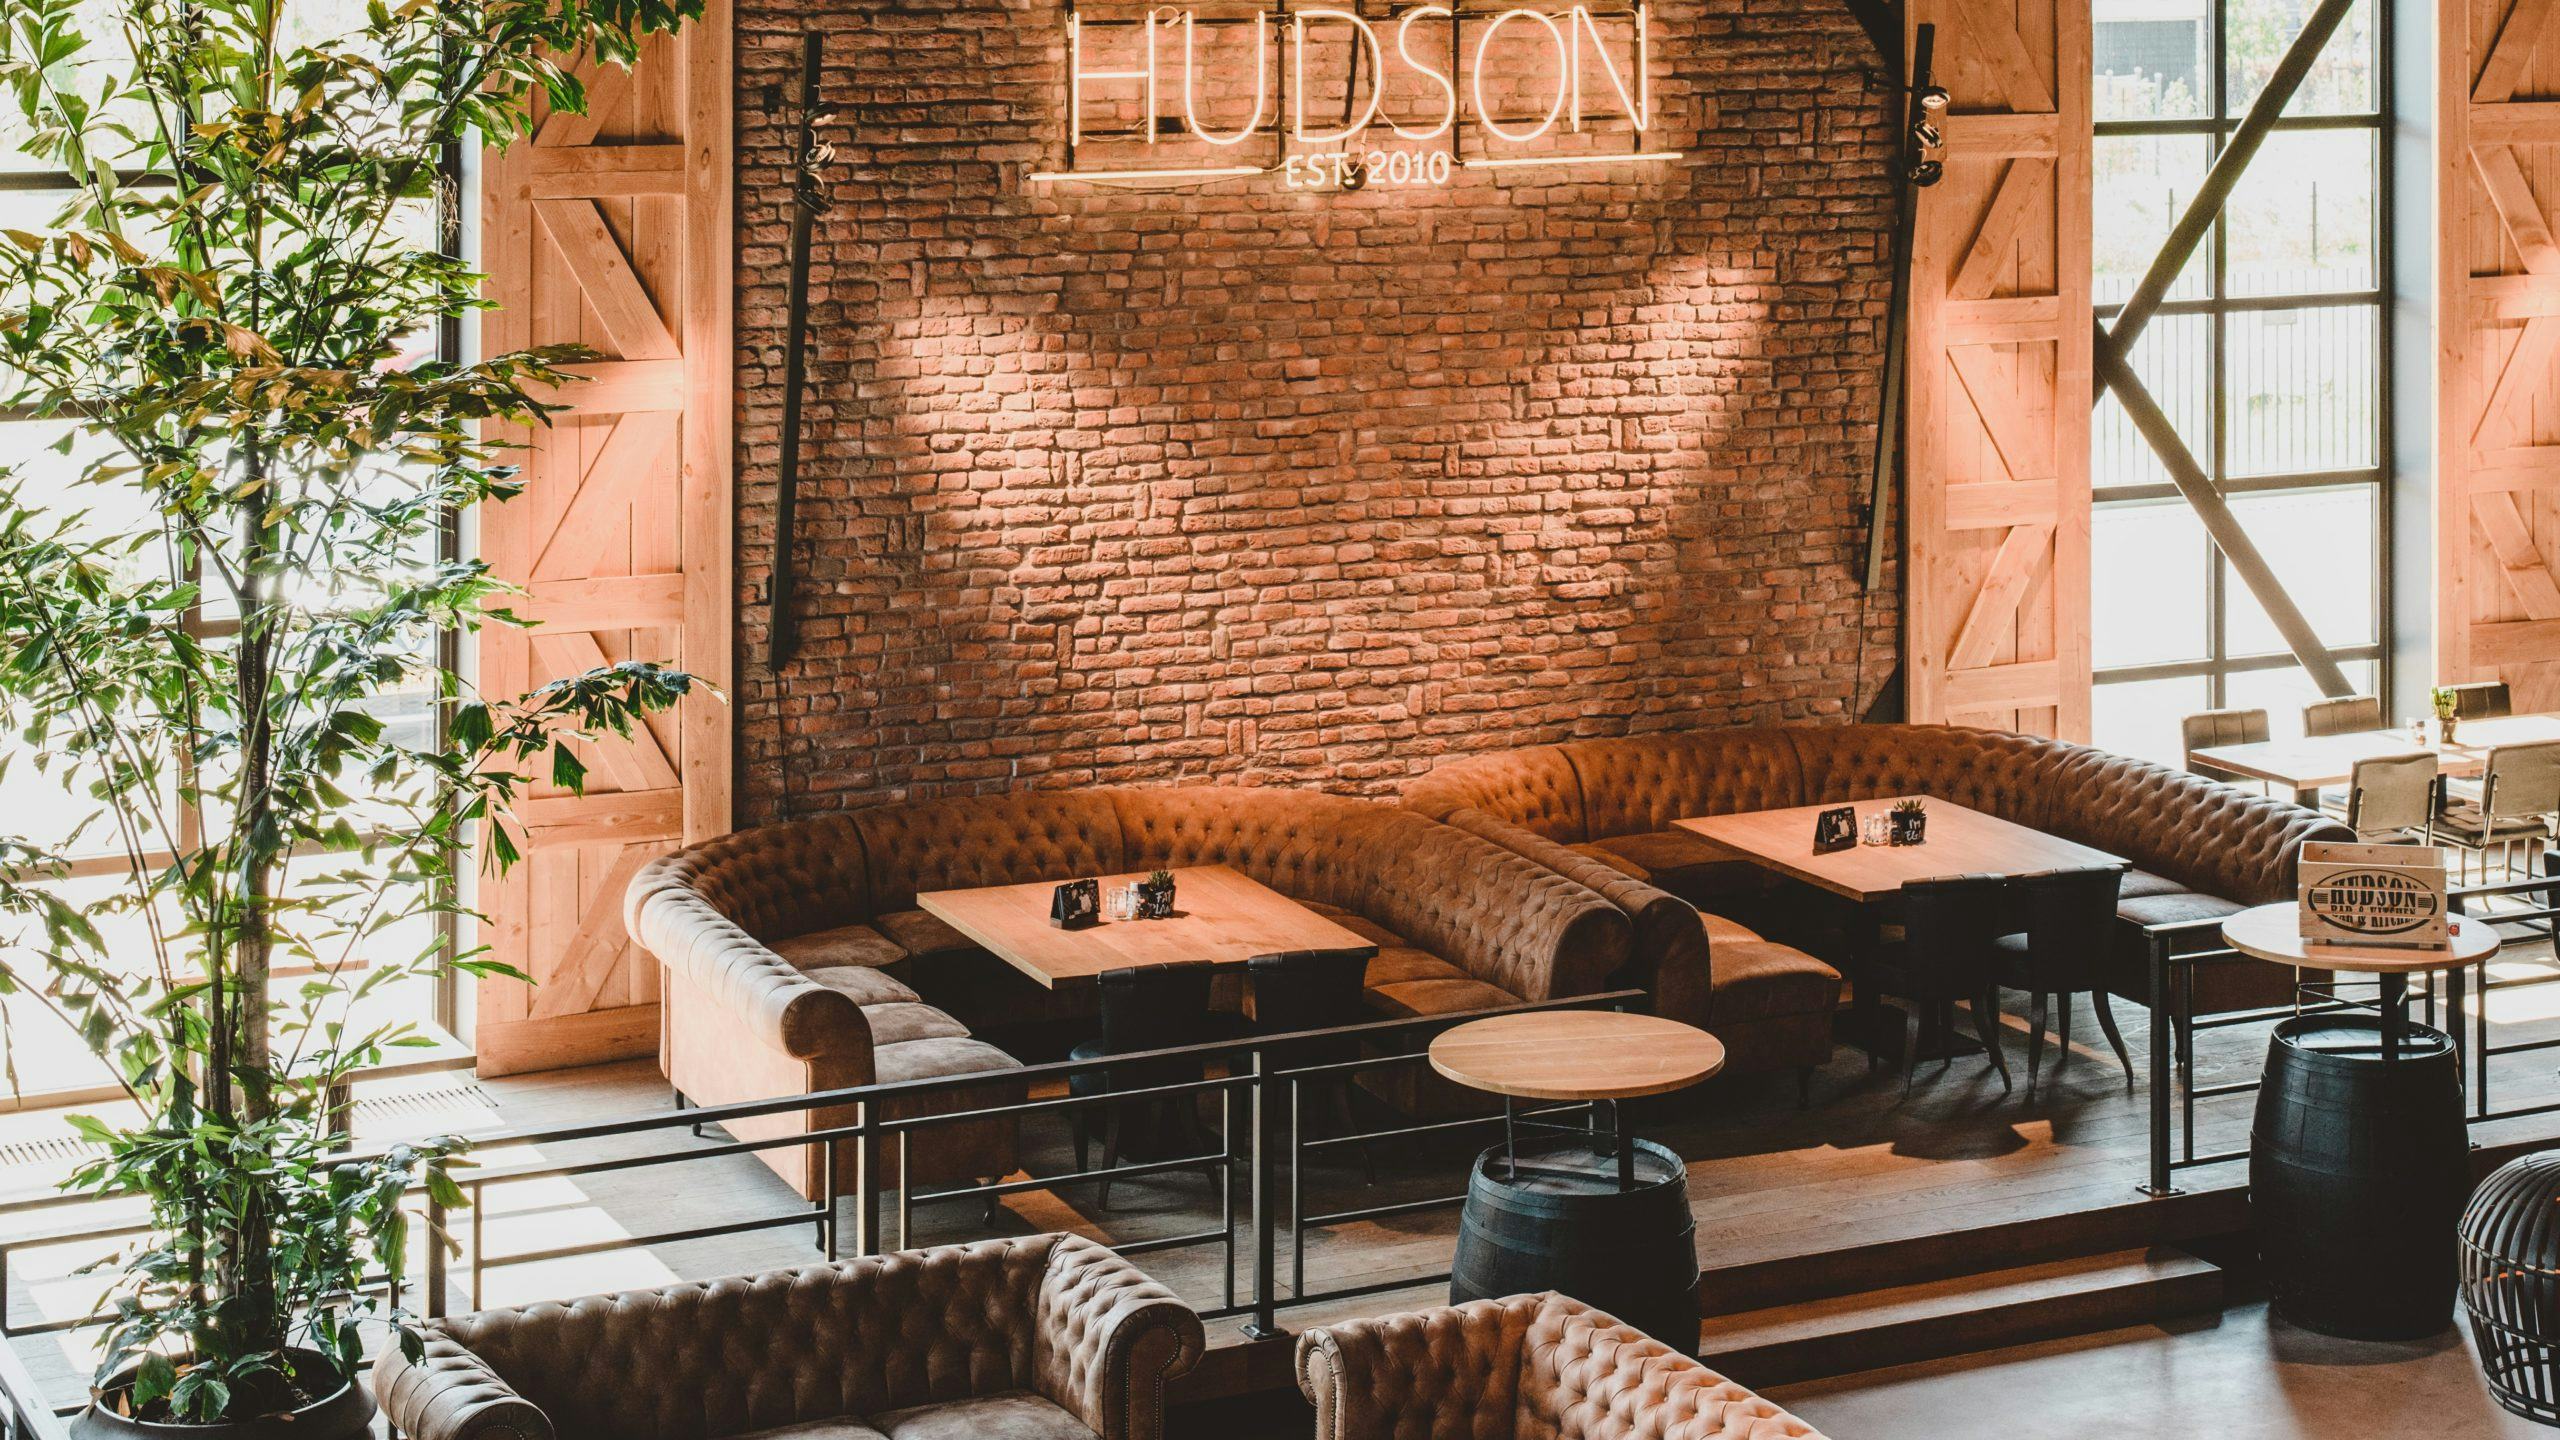 Amerikaans restaurantconcept Hudson opent tiende en grootste locatie